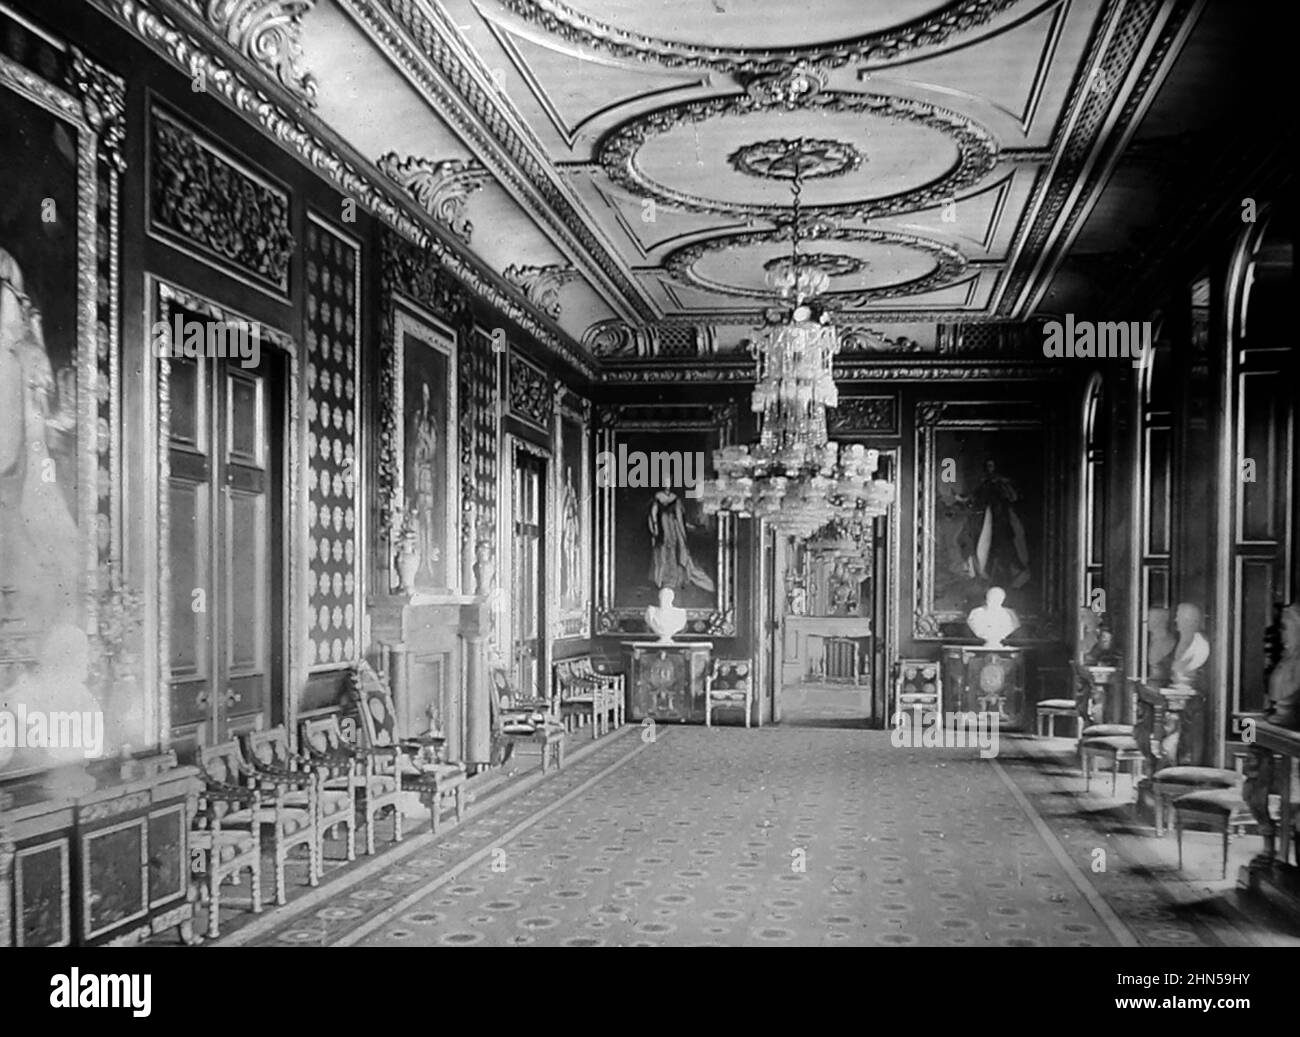 Throne Room, Windsor Castle, viktorianische Zeit Stockfoto